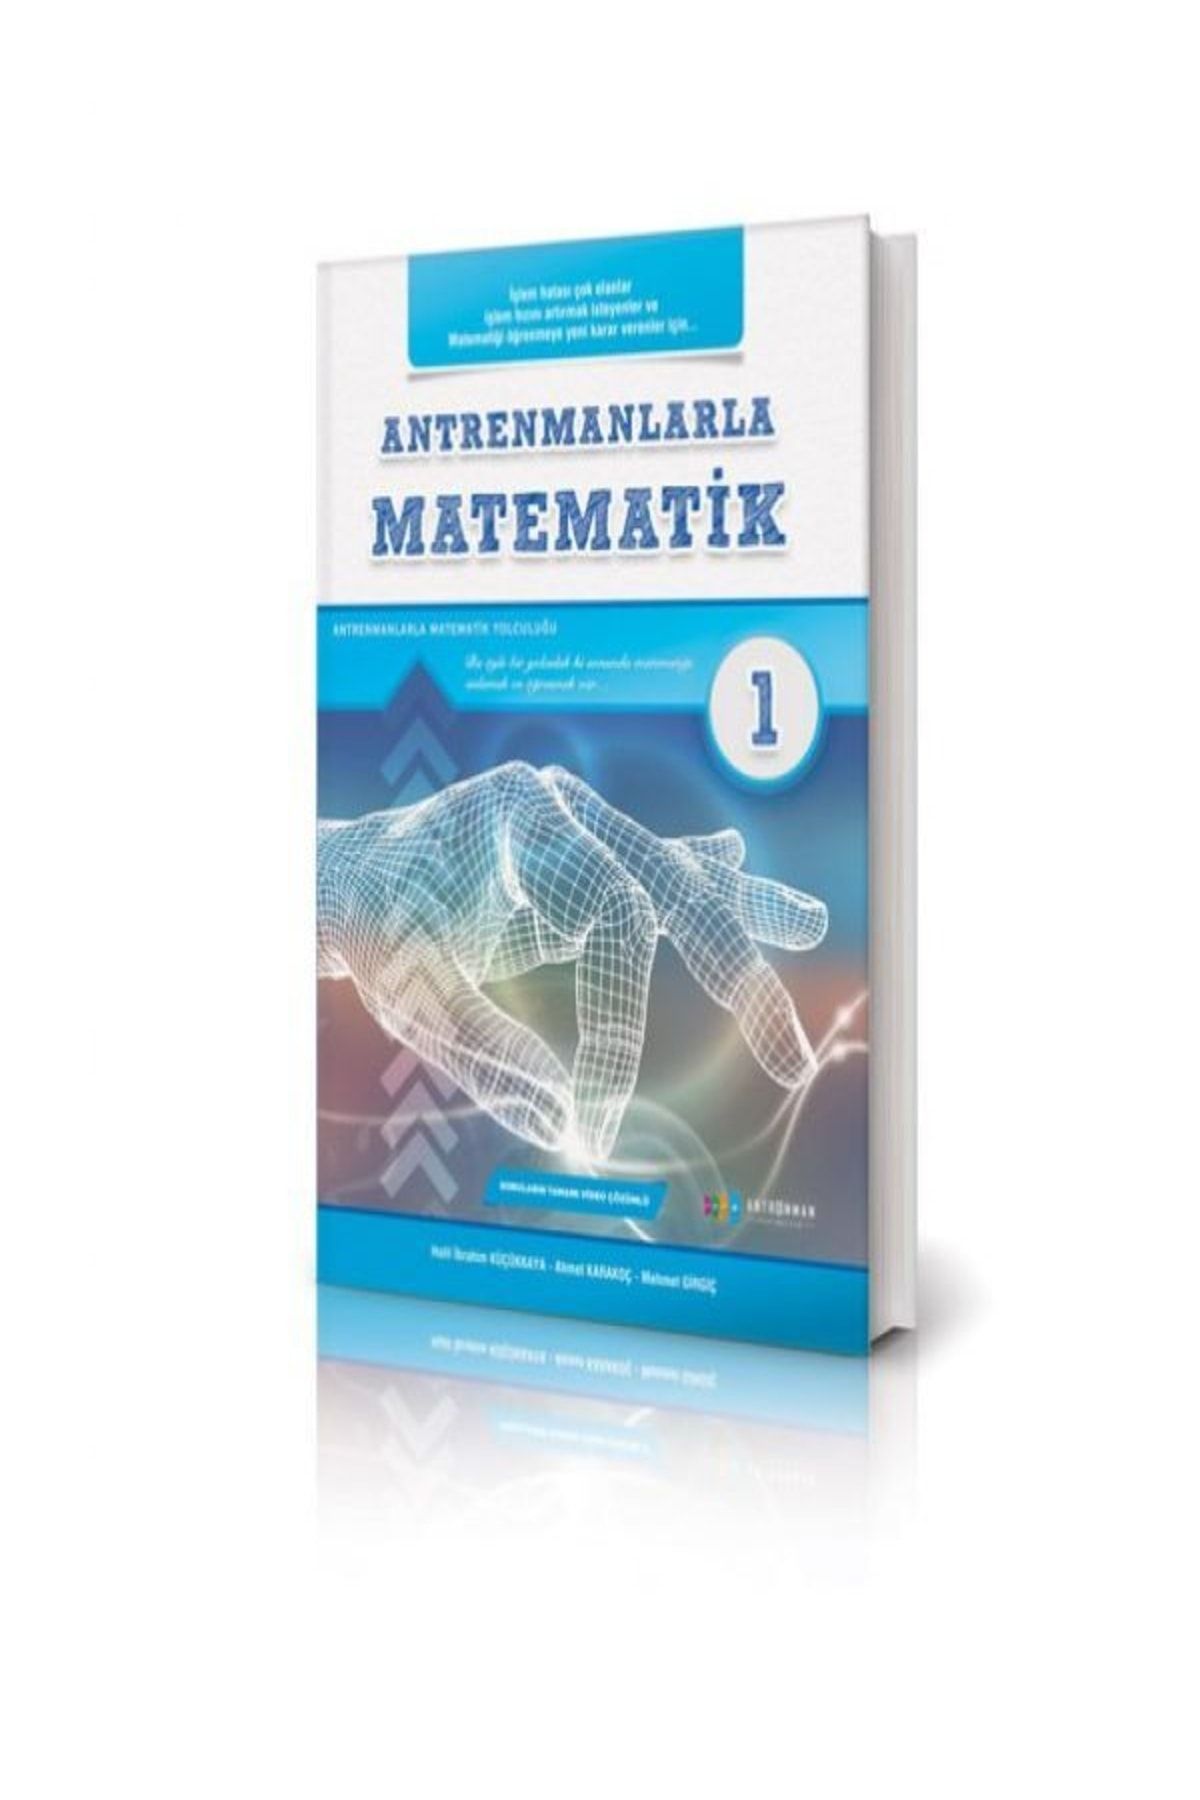 Antrenman Yayınları Antrenmanlarla Matematik 1.kitap